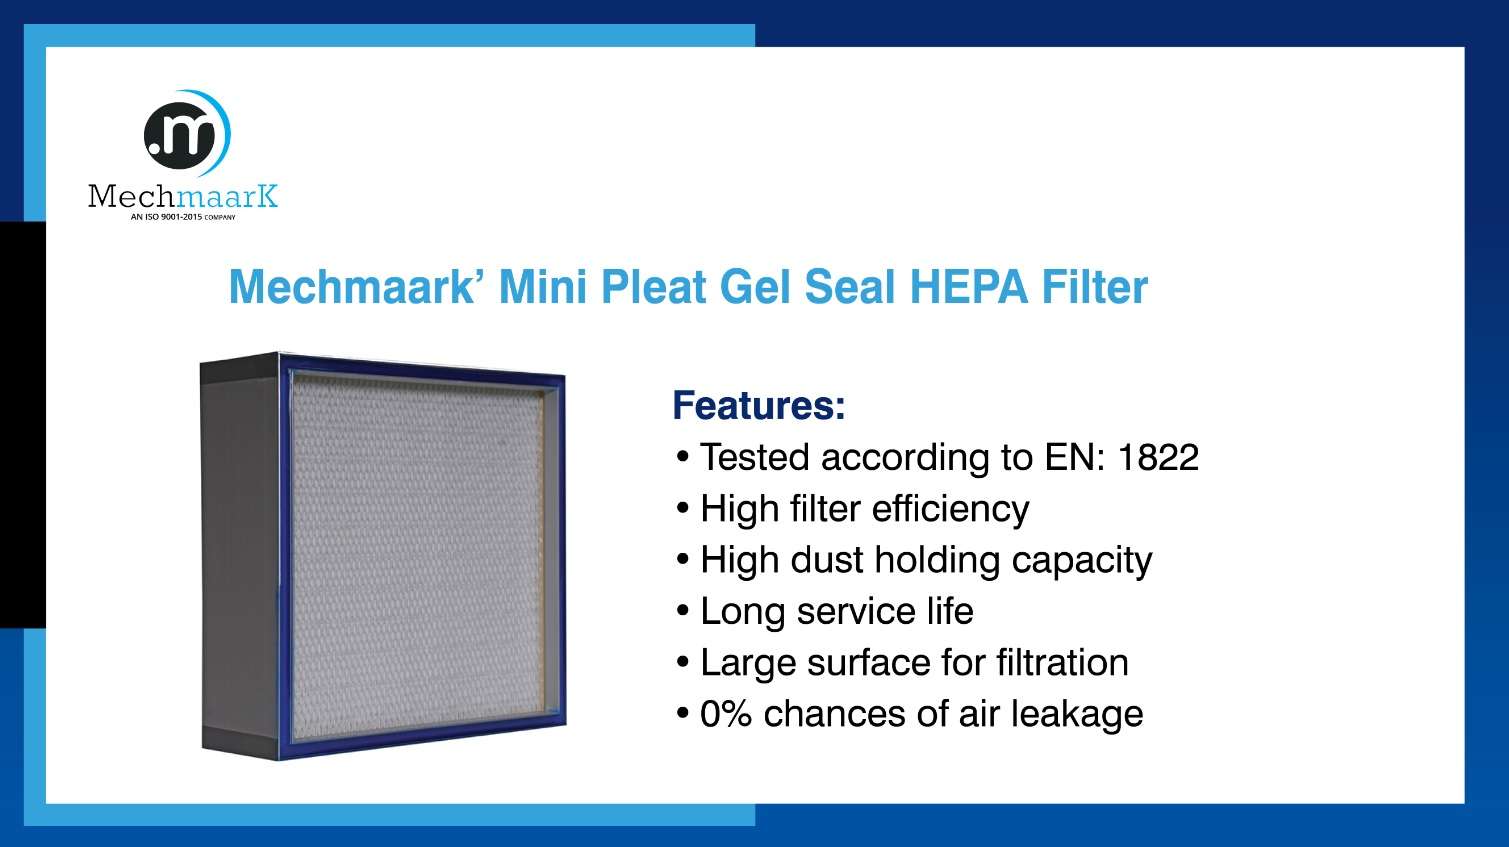 MechMaark’ Mini Pleat GEL Seal HEPA Filter